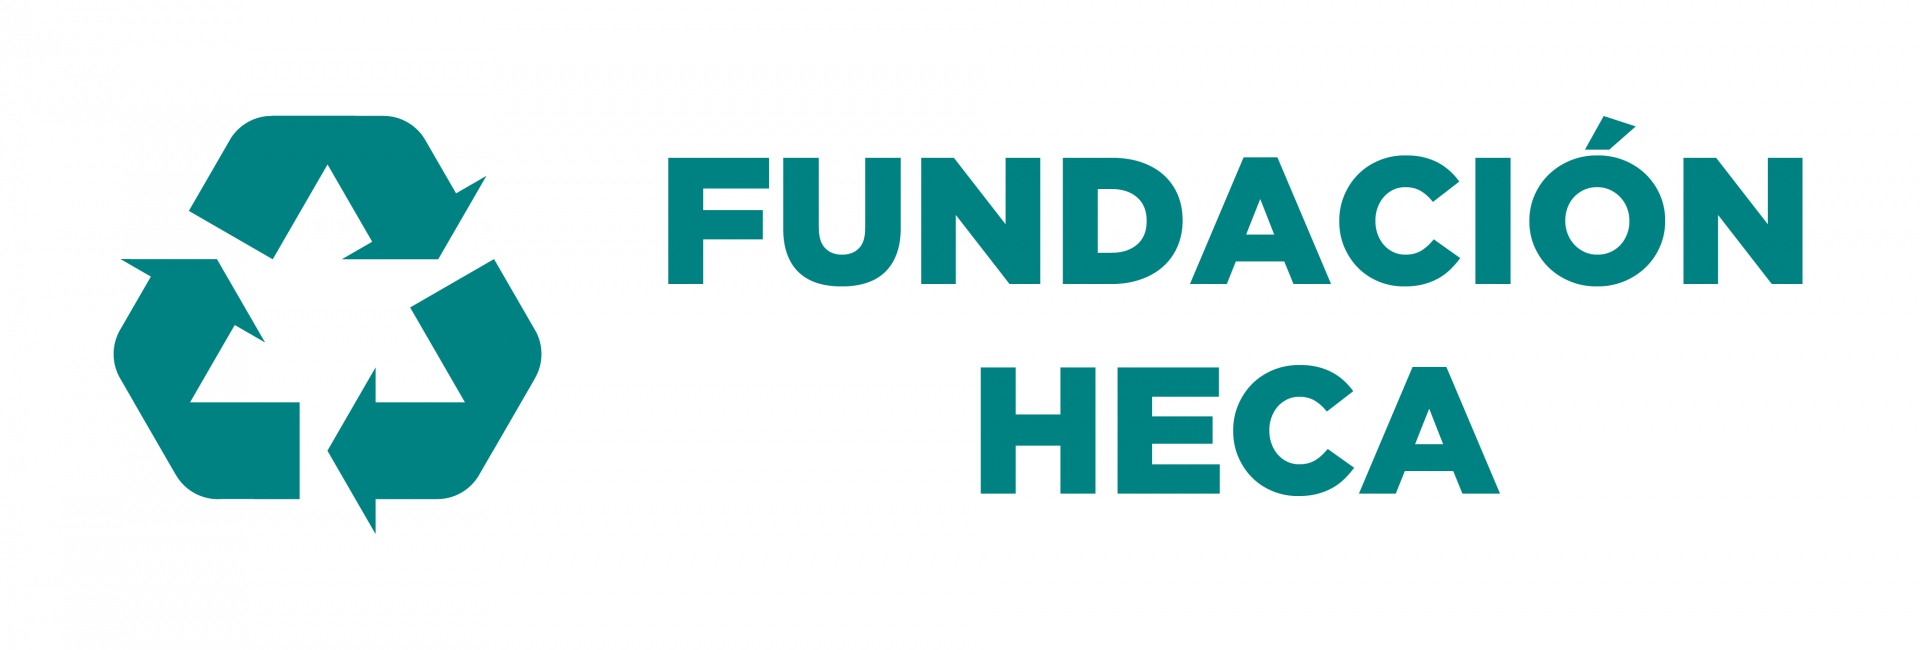 Fundación HECA